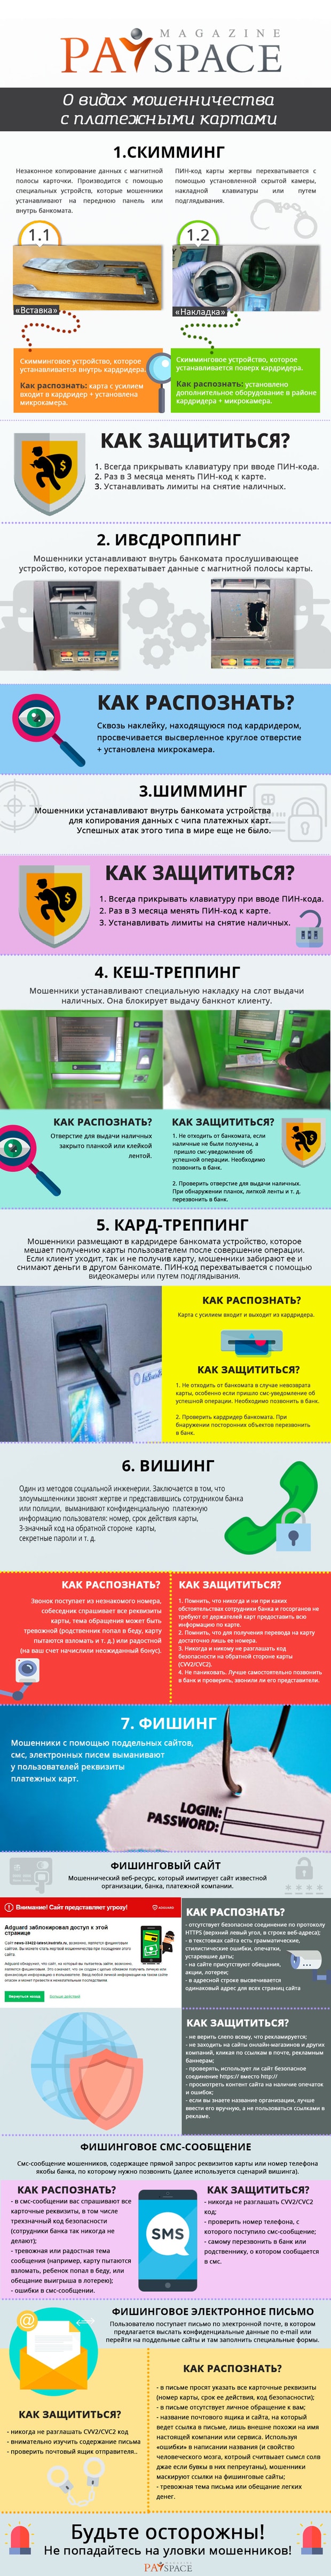 Как защитить банковскую карту советы которые Вам пригодятся kak-zashhitit-bankovskuyu-kartu-sovety-kotorye-vam-prigodyatsya-2